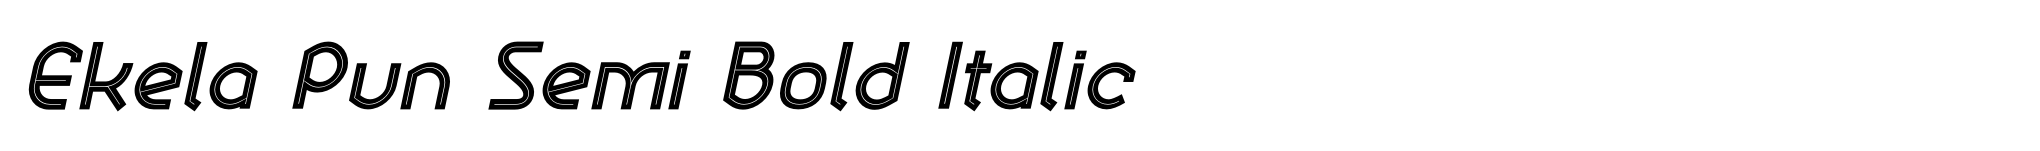 Ekela Pun Semi Bold Italic image